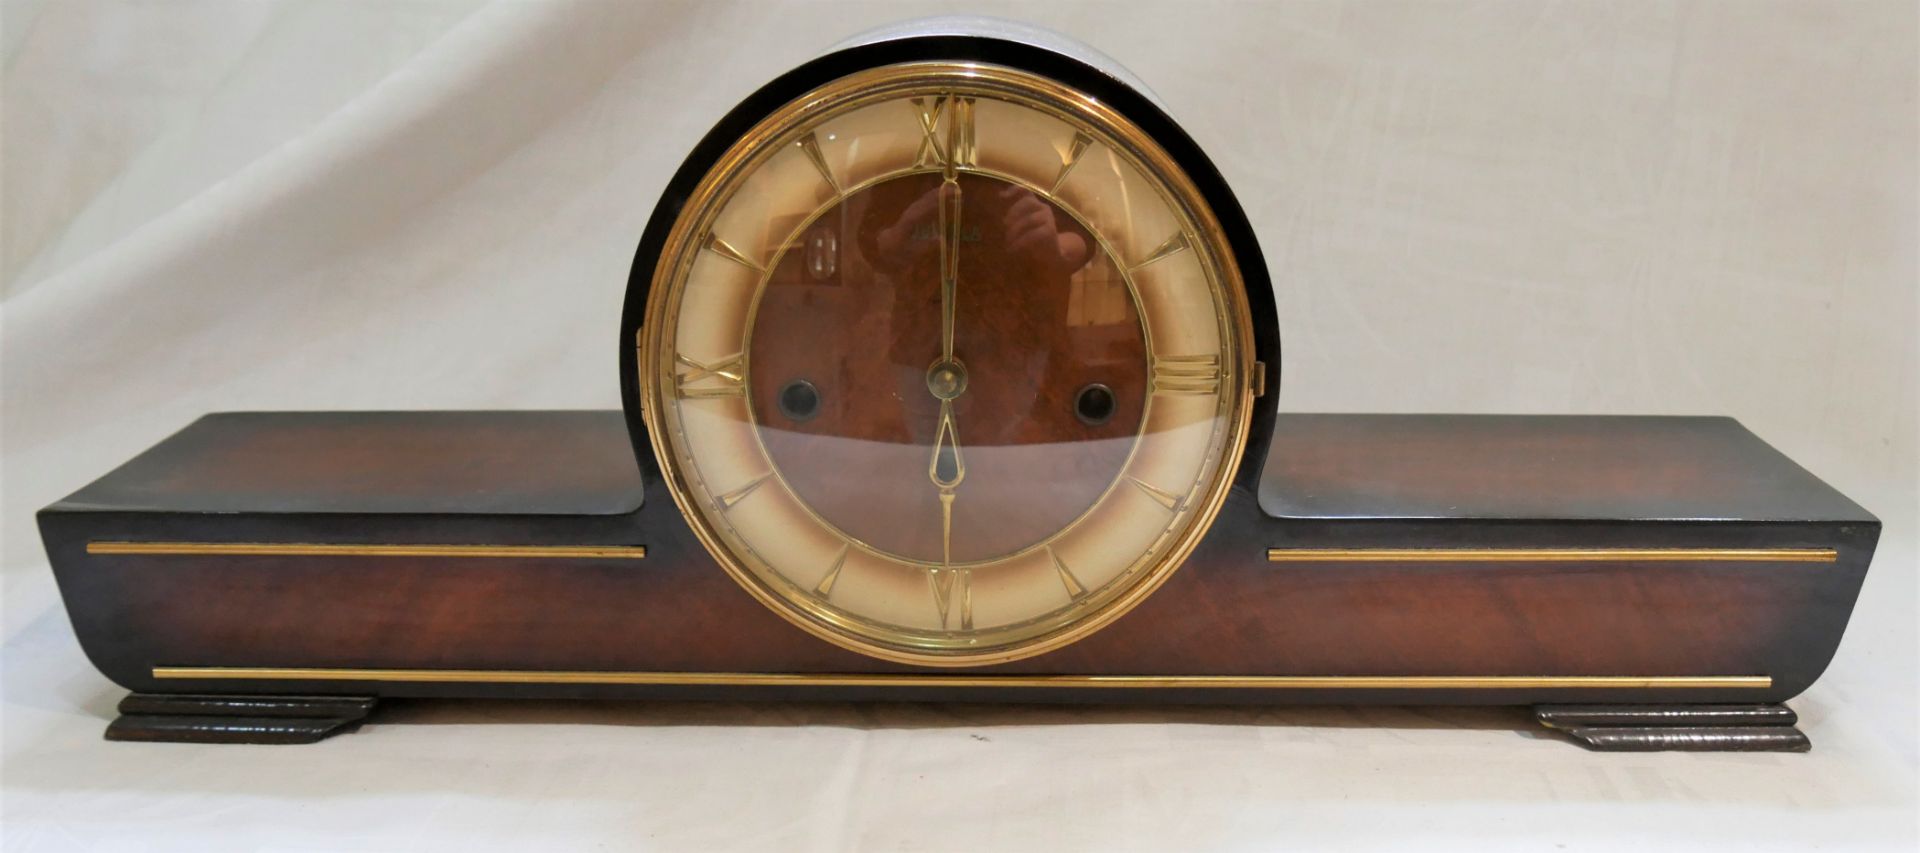 Kaminuhr / Tischuhr von Juwela mit Schlüssel. Länge ca. 54,5 cm, Höhe ca. 19,5 cm